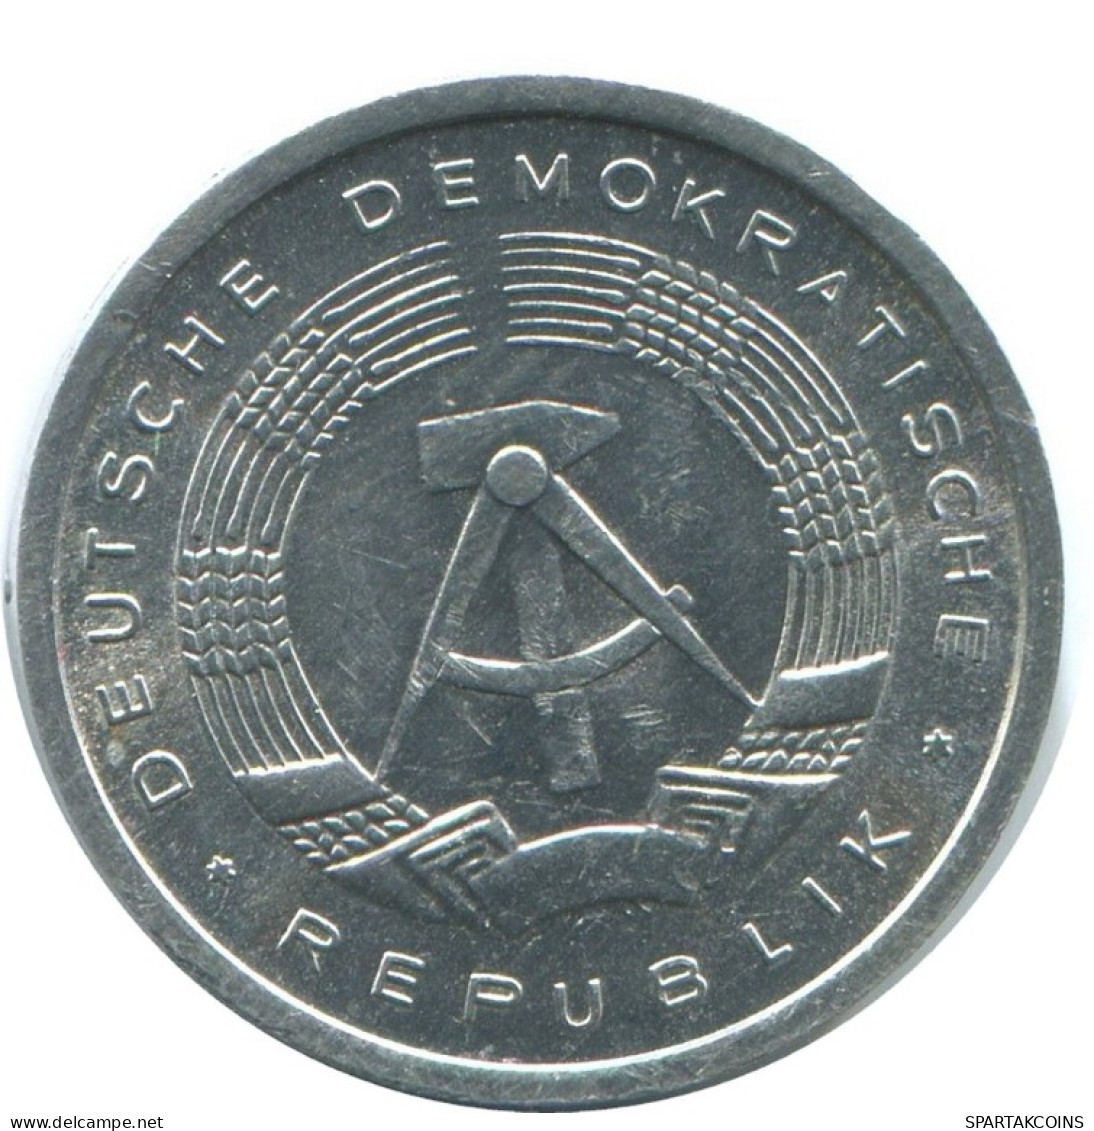 1 PFENNIG 1981 A DDR EAST ALEMANIA Moneda GERMANY #AE052.E.A - 1 Pfennig